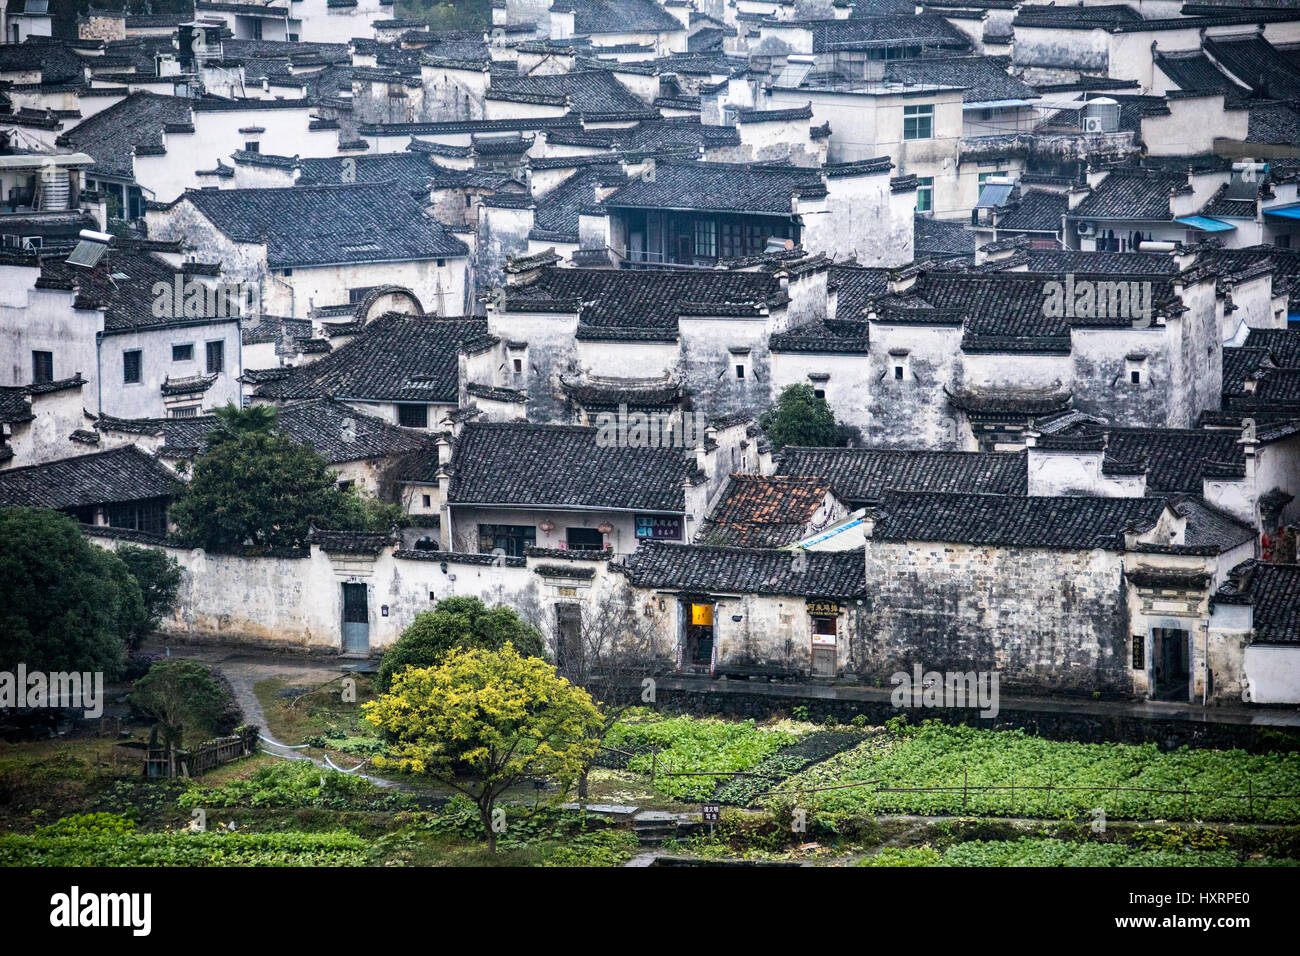 Xidi, traditional Chinese village, Huizhou, China Stock Photo